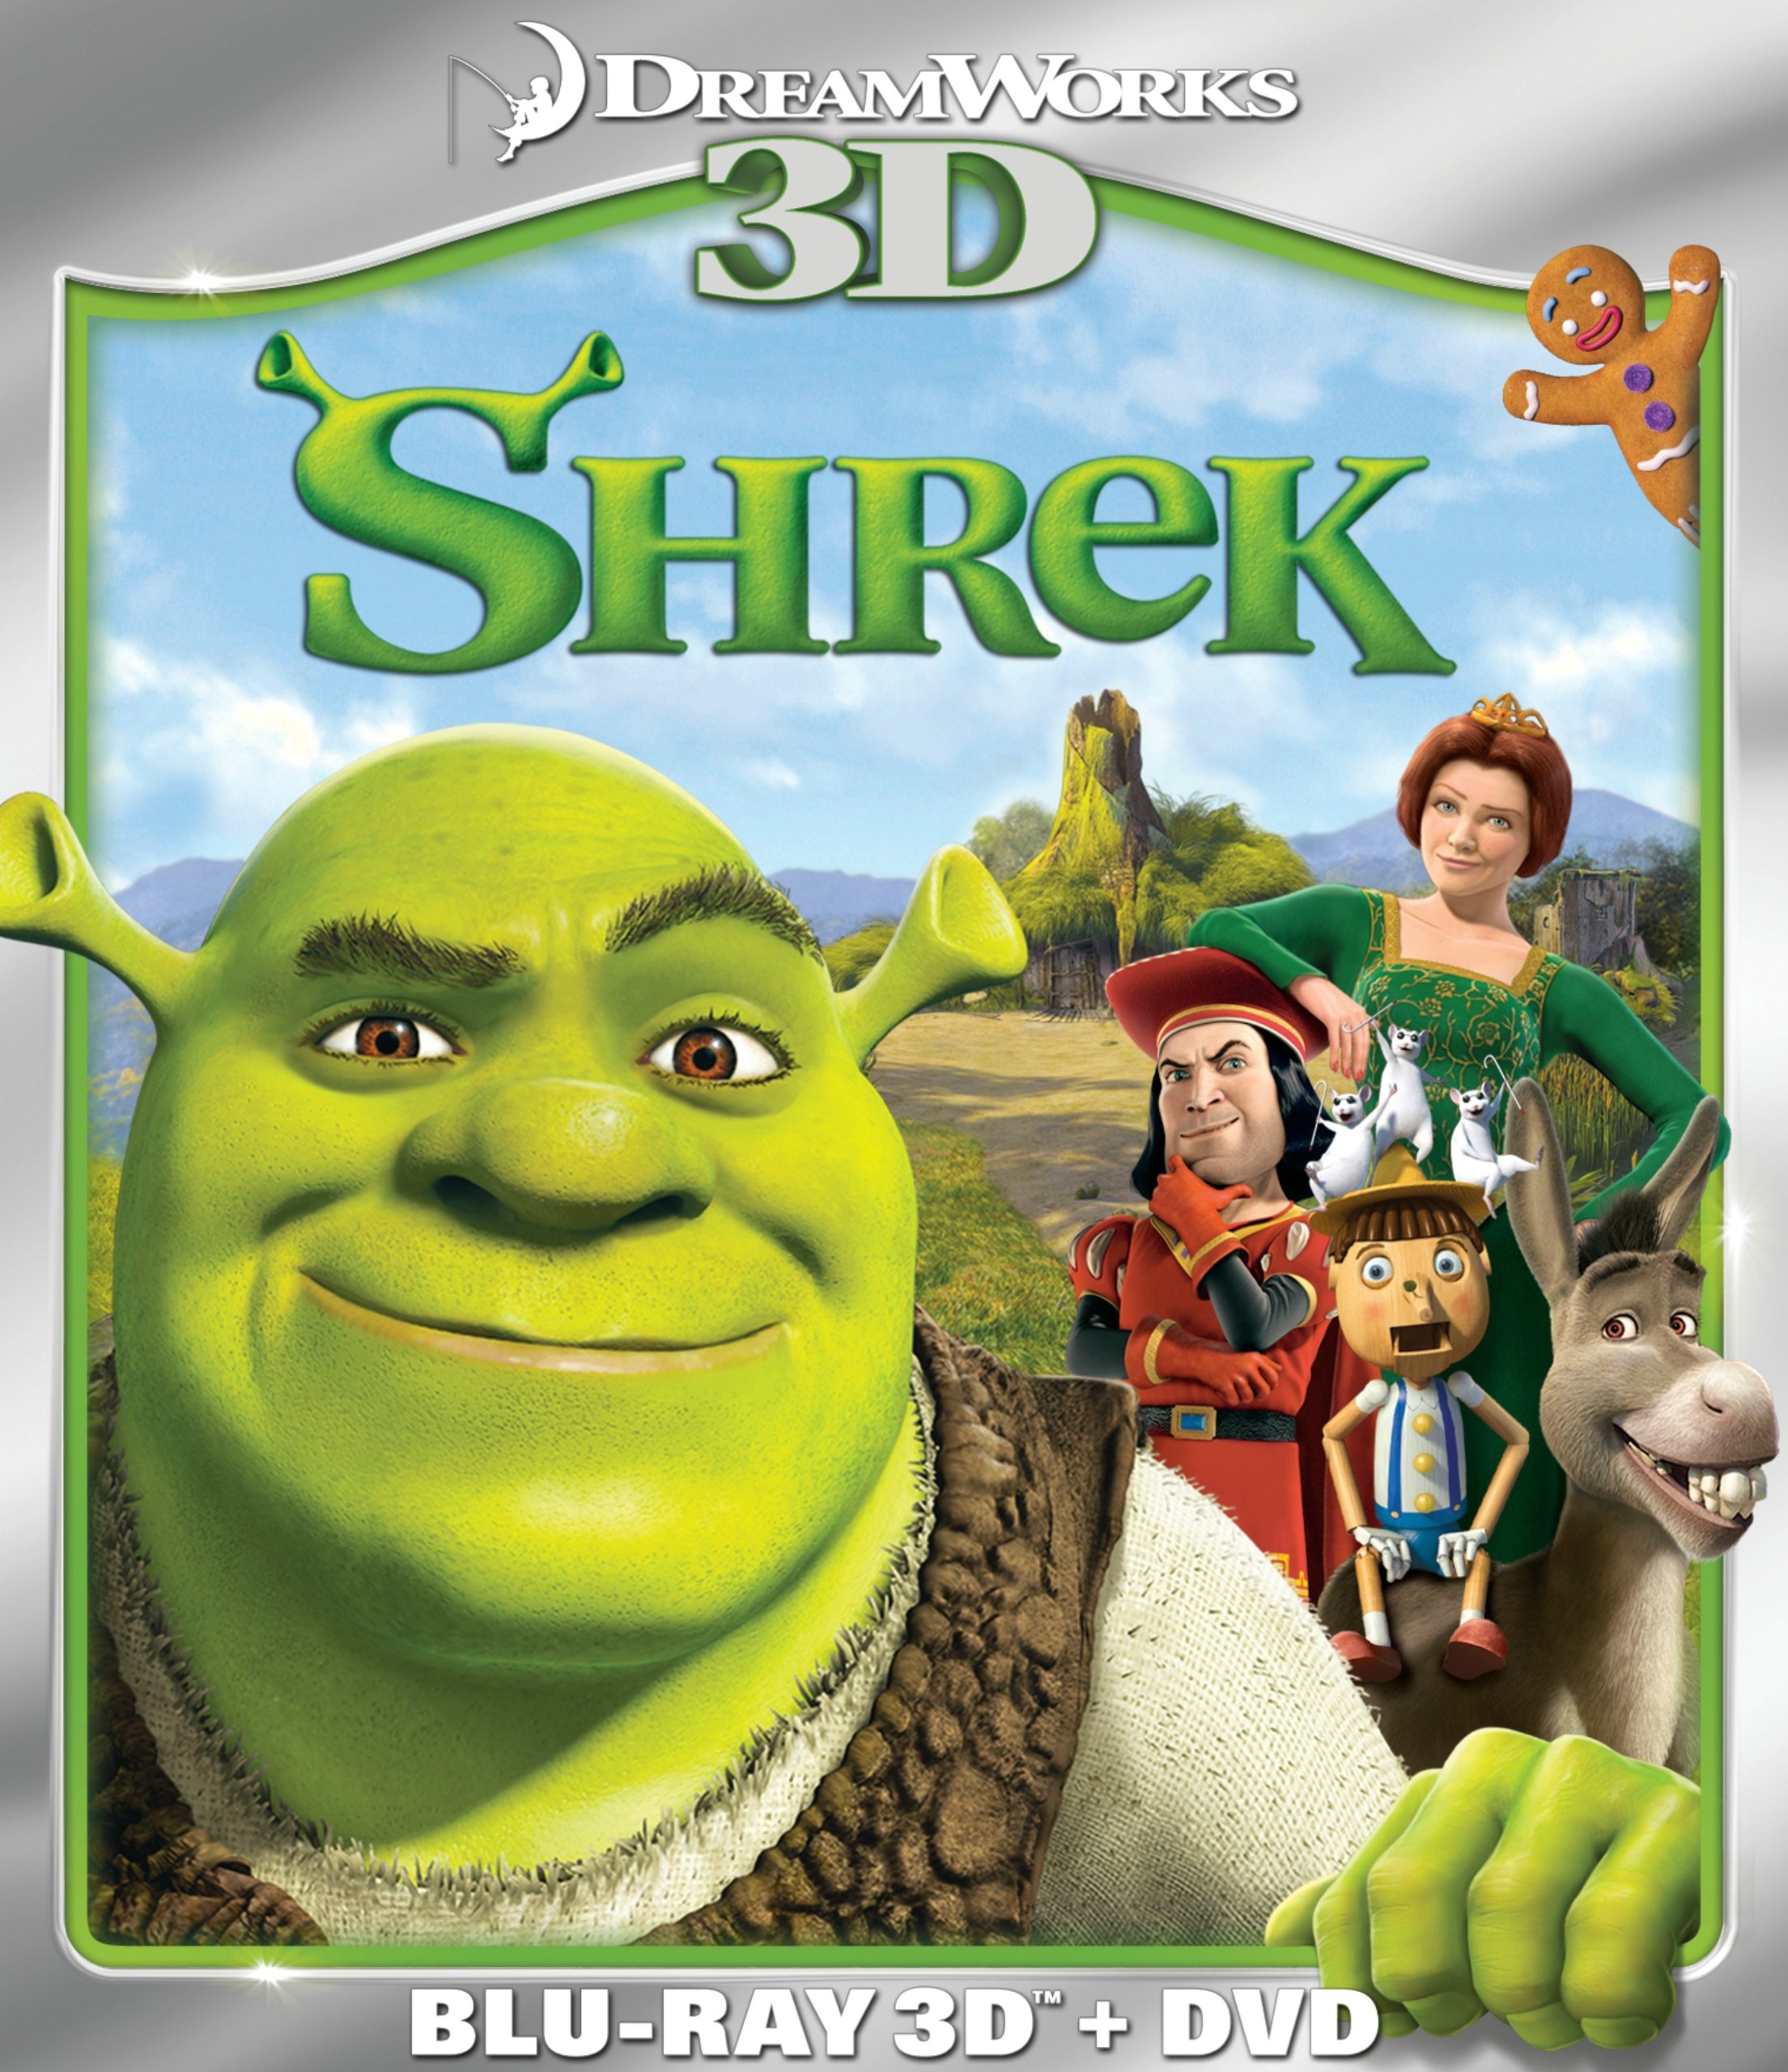 Shrek Dvd Release Date